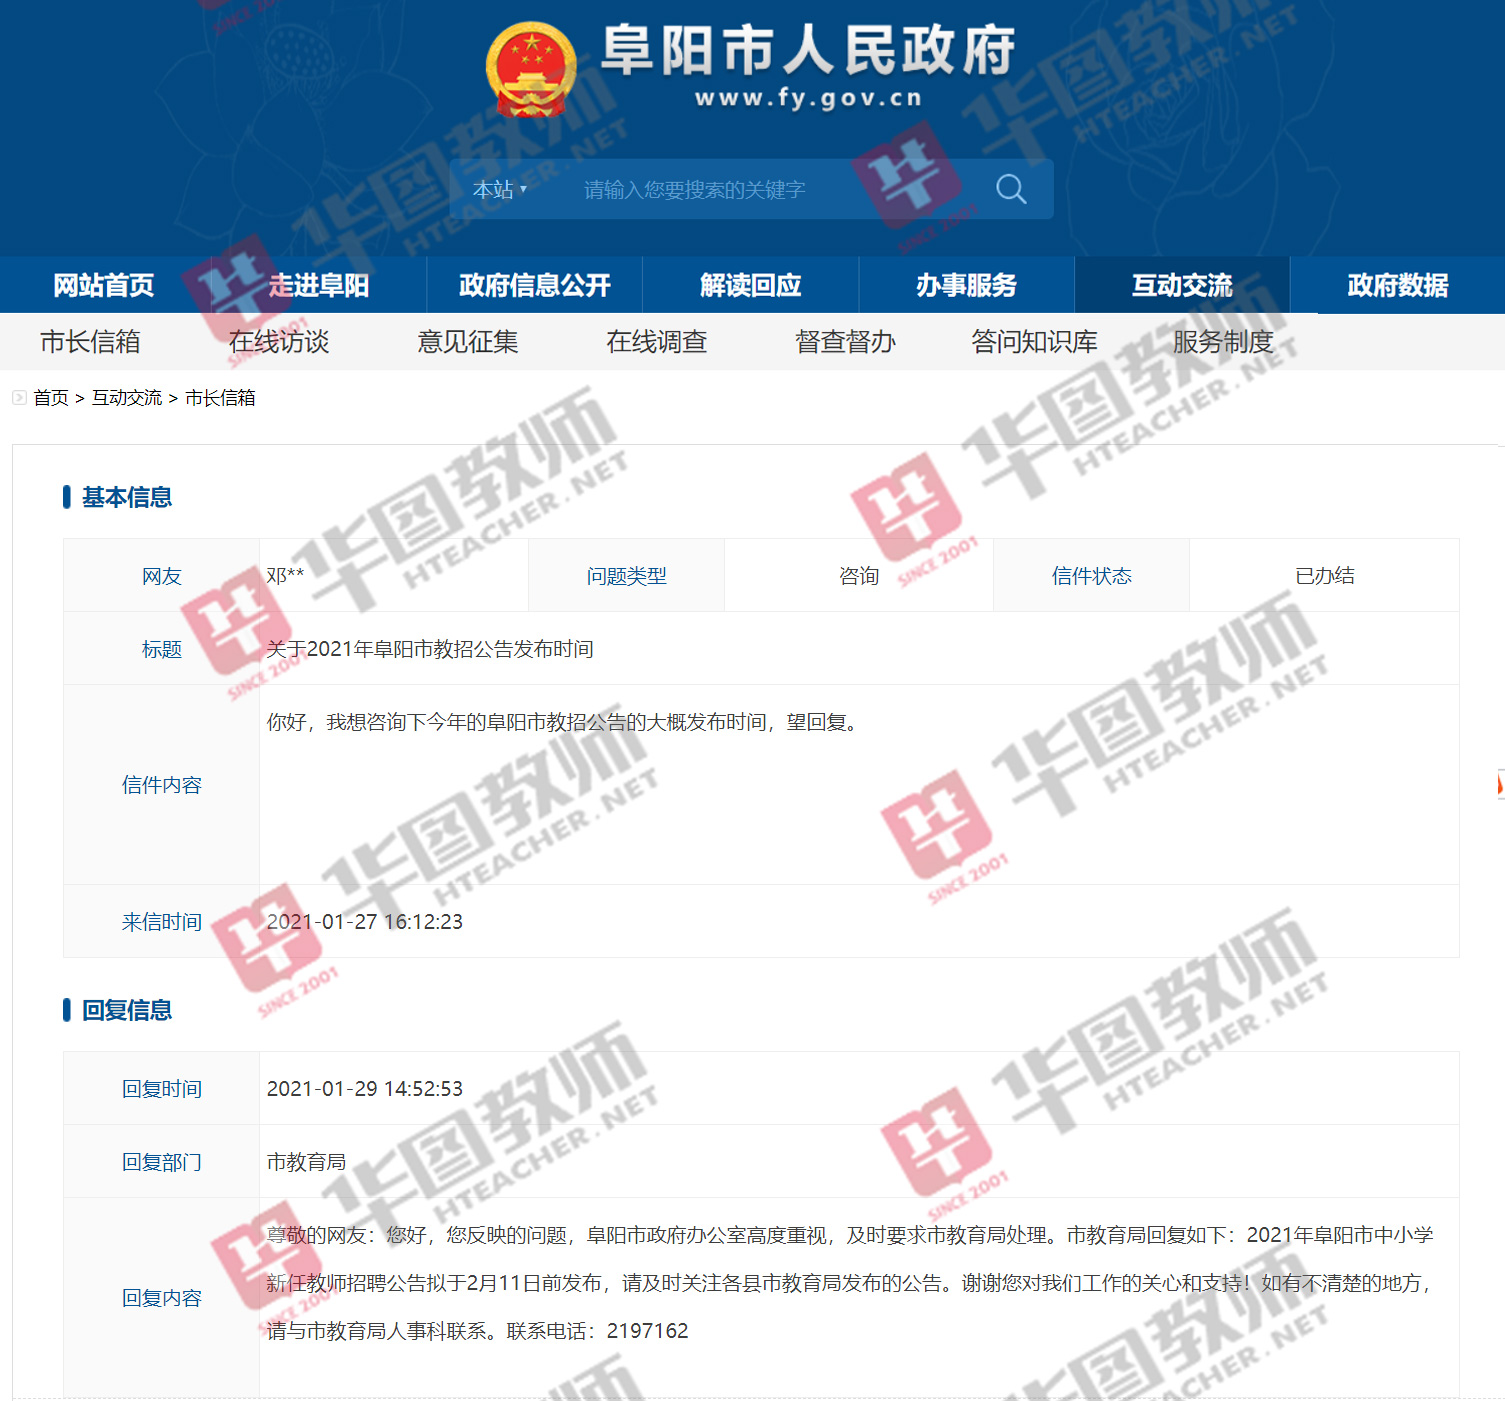 2021安徽教师考编-蚌埠市招聘公告会在2月11日前发布吗